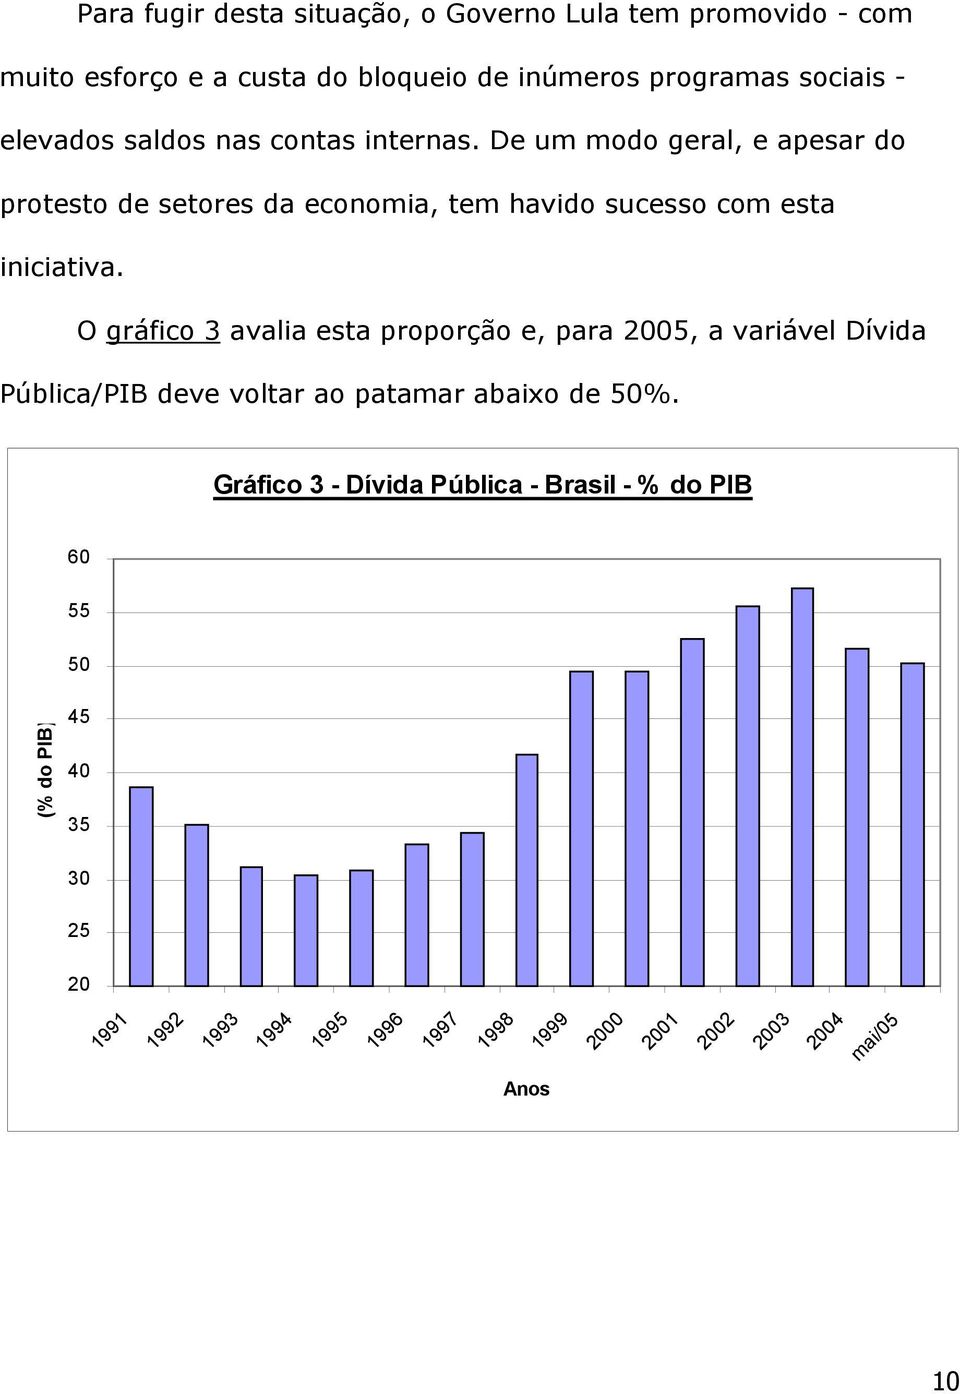 O gráfico 3 avalia esta proporção e, para 2005, a variável Dívida Pública/PIB deve voltar ao patamar abaixo de 50%.